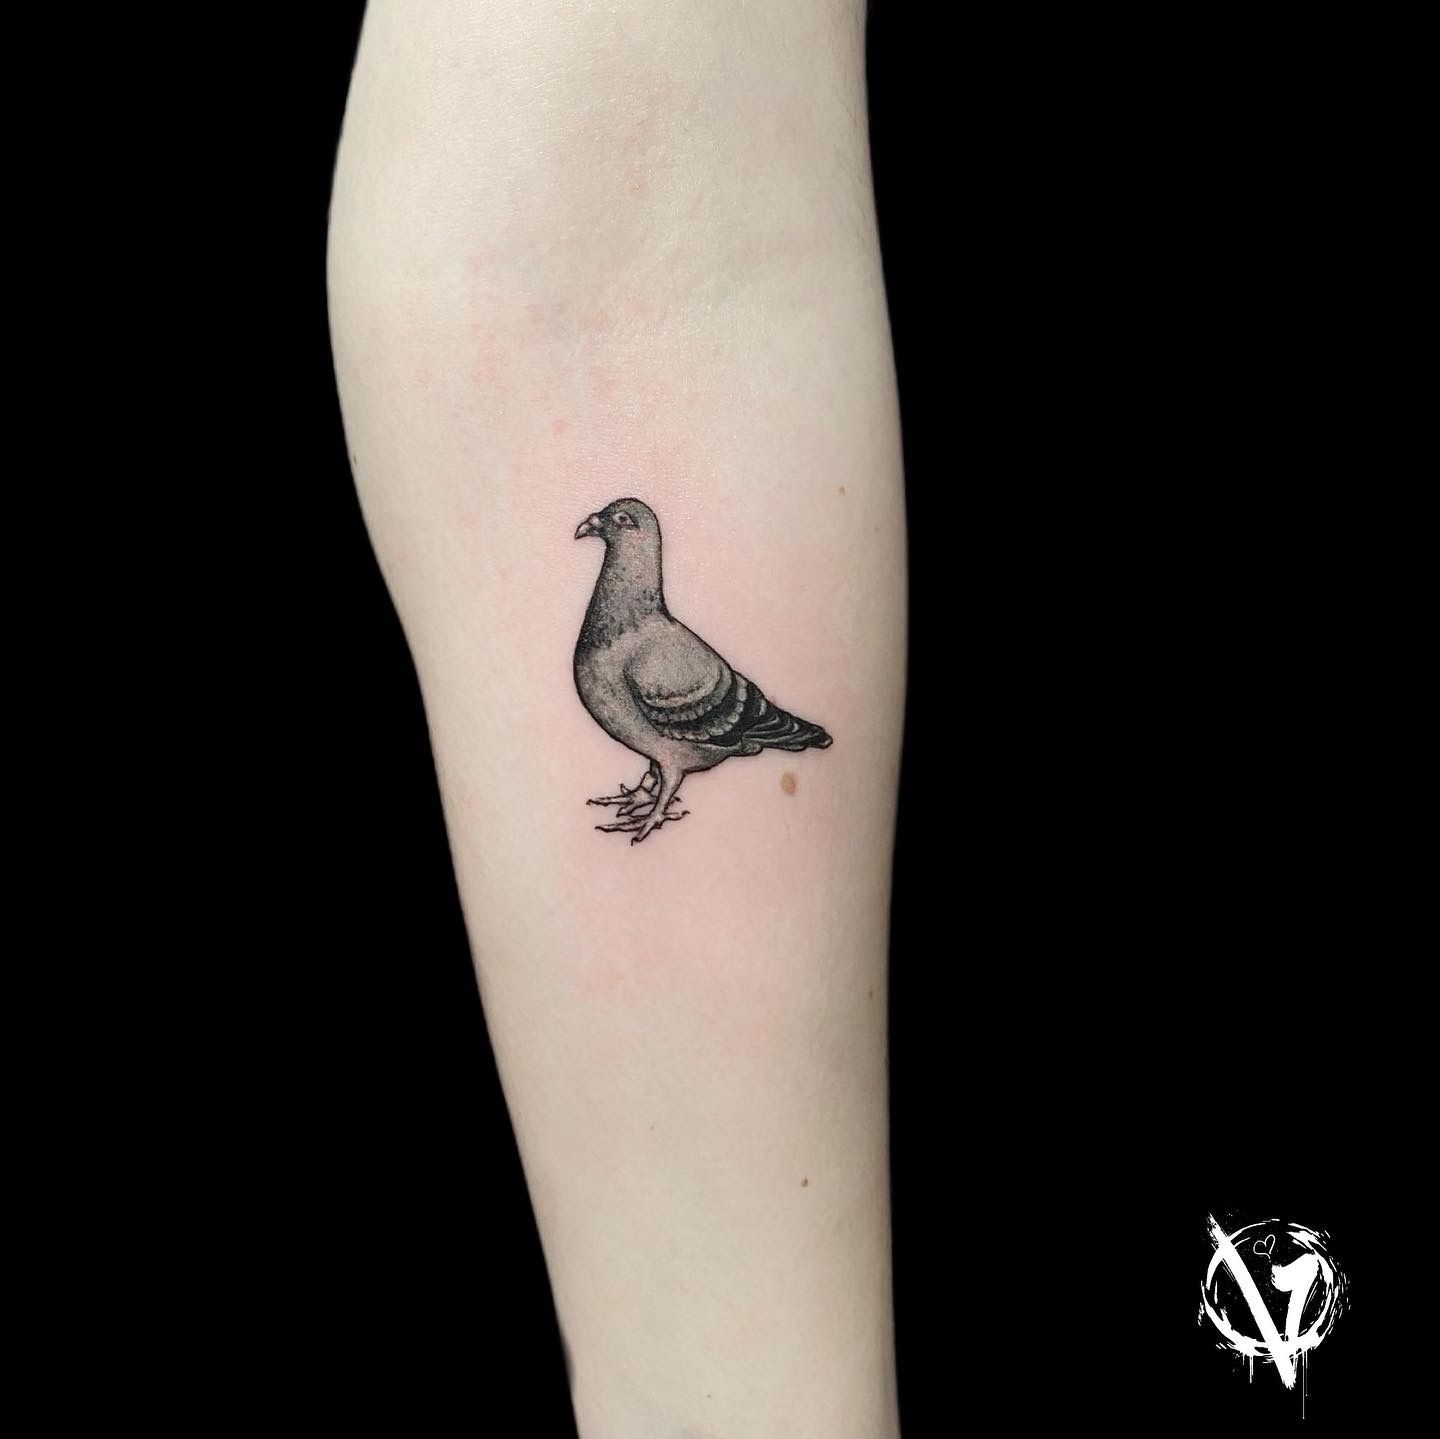 bibi abelle studios | Pigeon's 🪶 ———thank you so much! - - - - - - - - -  #birdtattoo #pigeons #pigeontattoo #realismtattoo #tattoos #inkstagram  #t... | Instagram